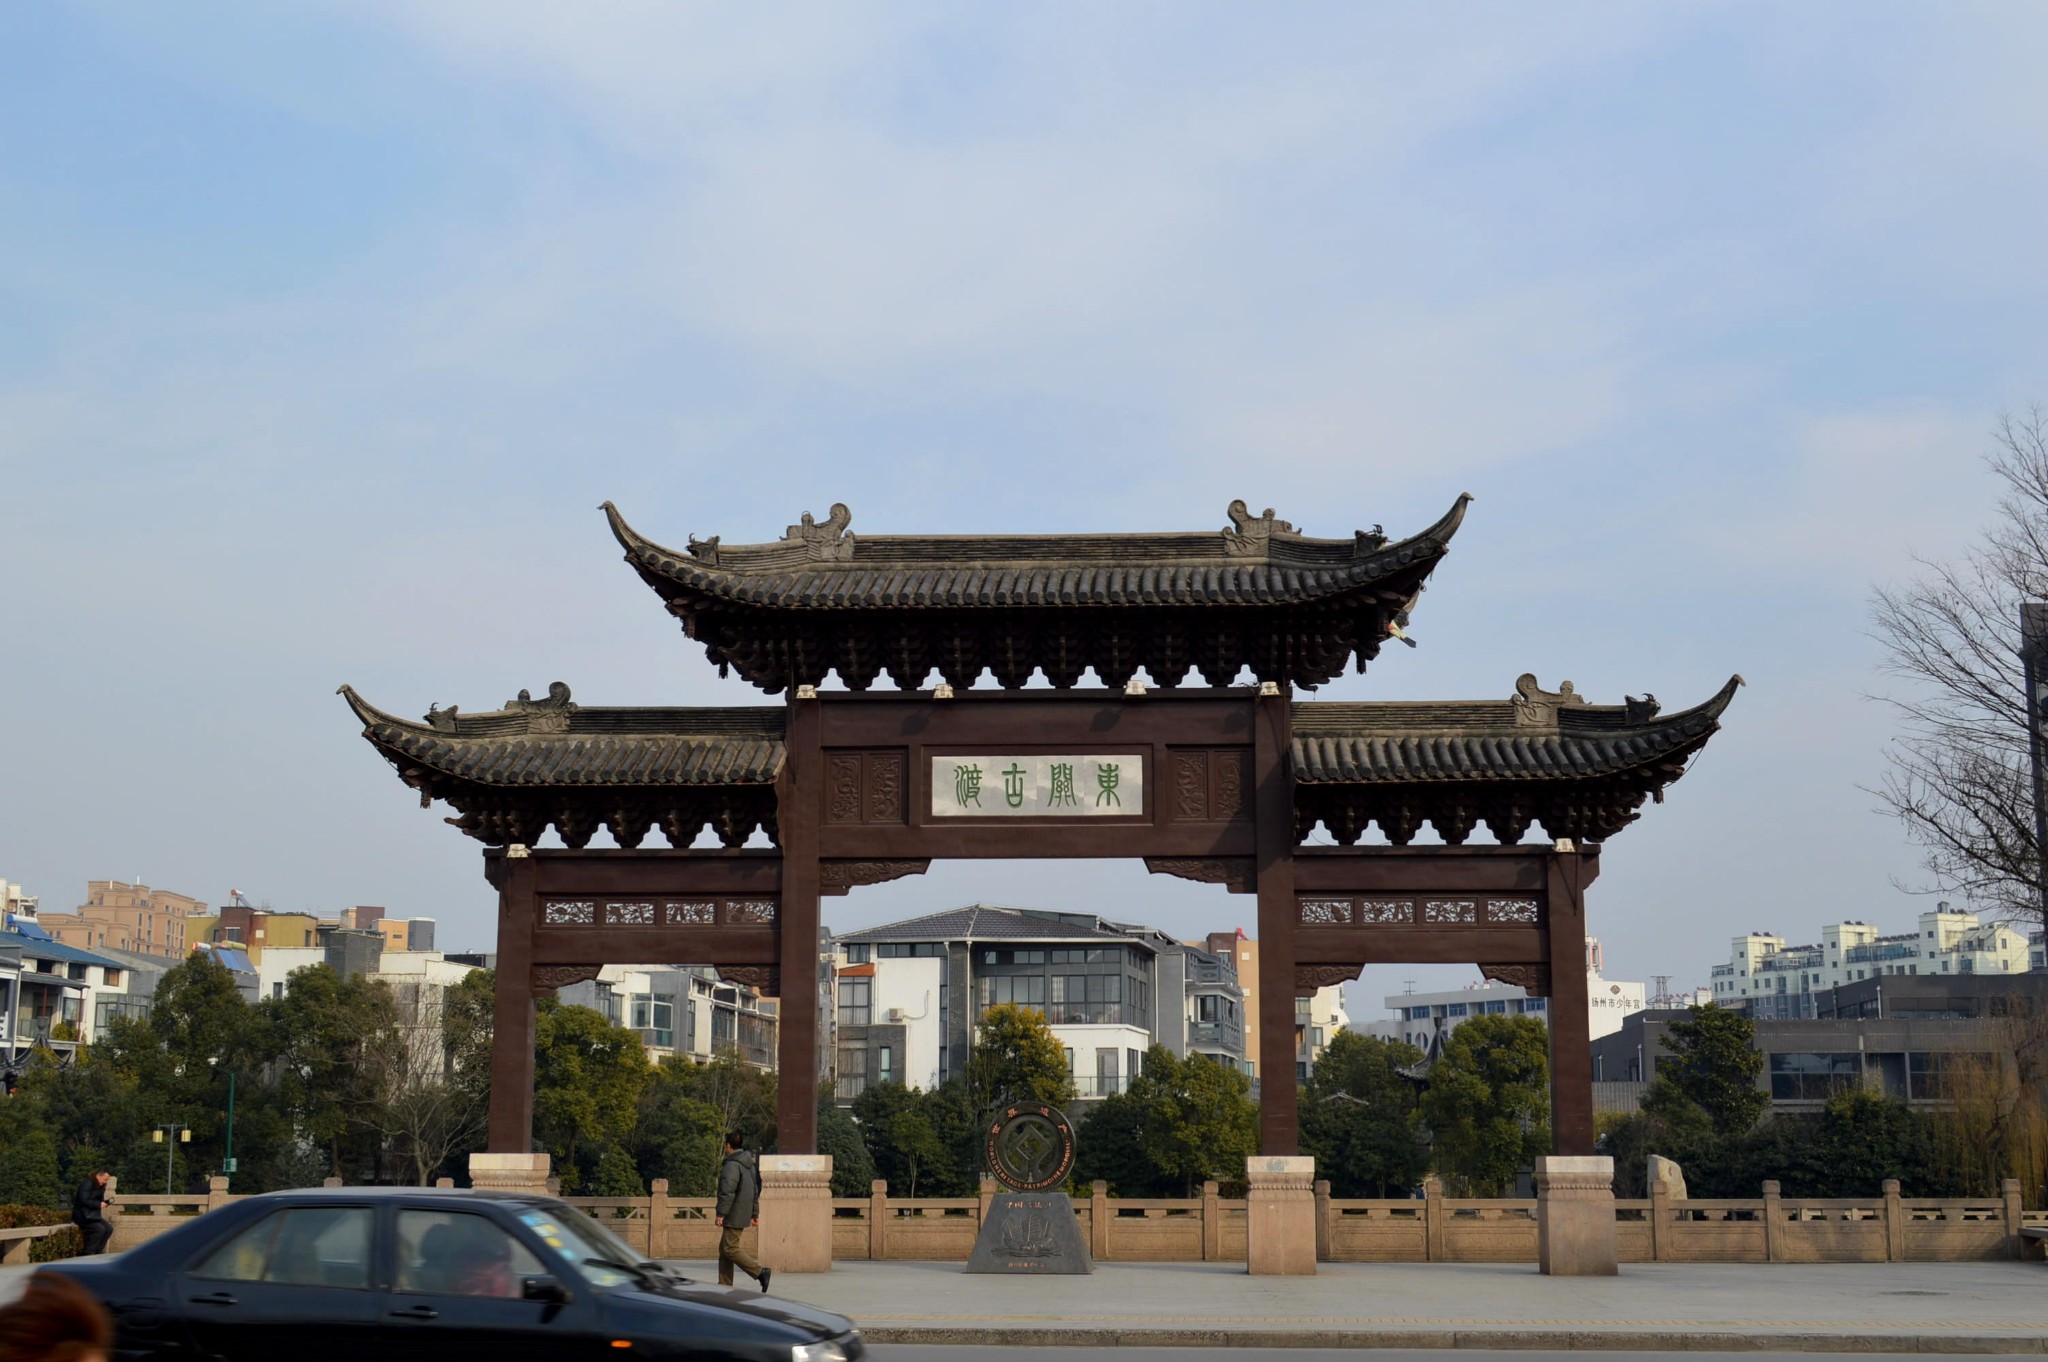 扬州东站附近景点图片